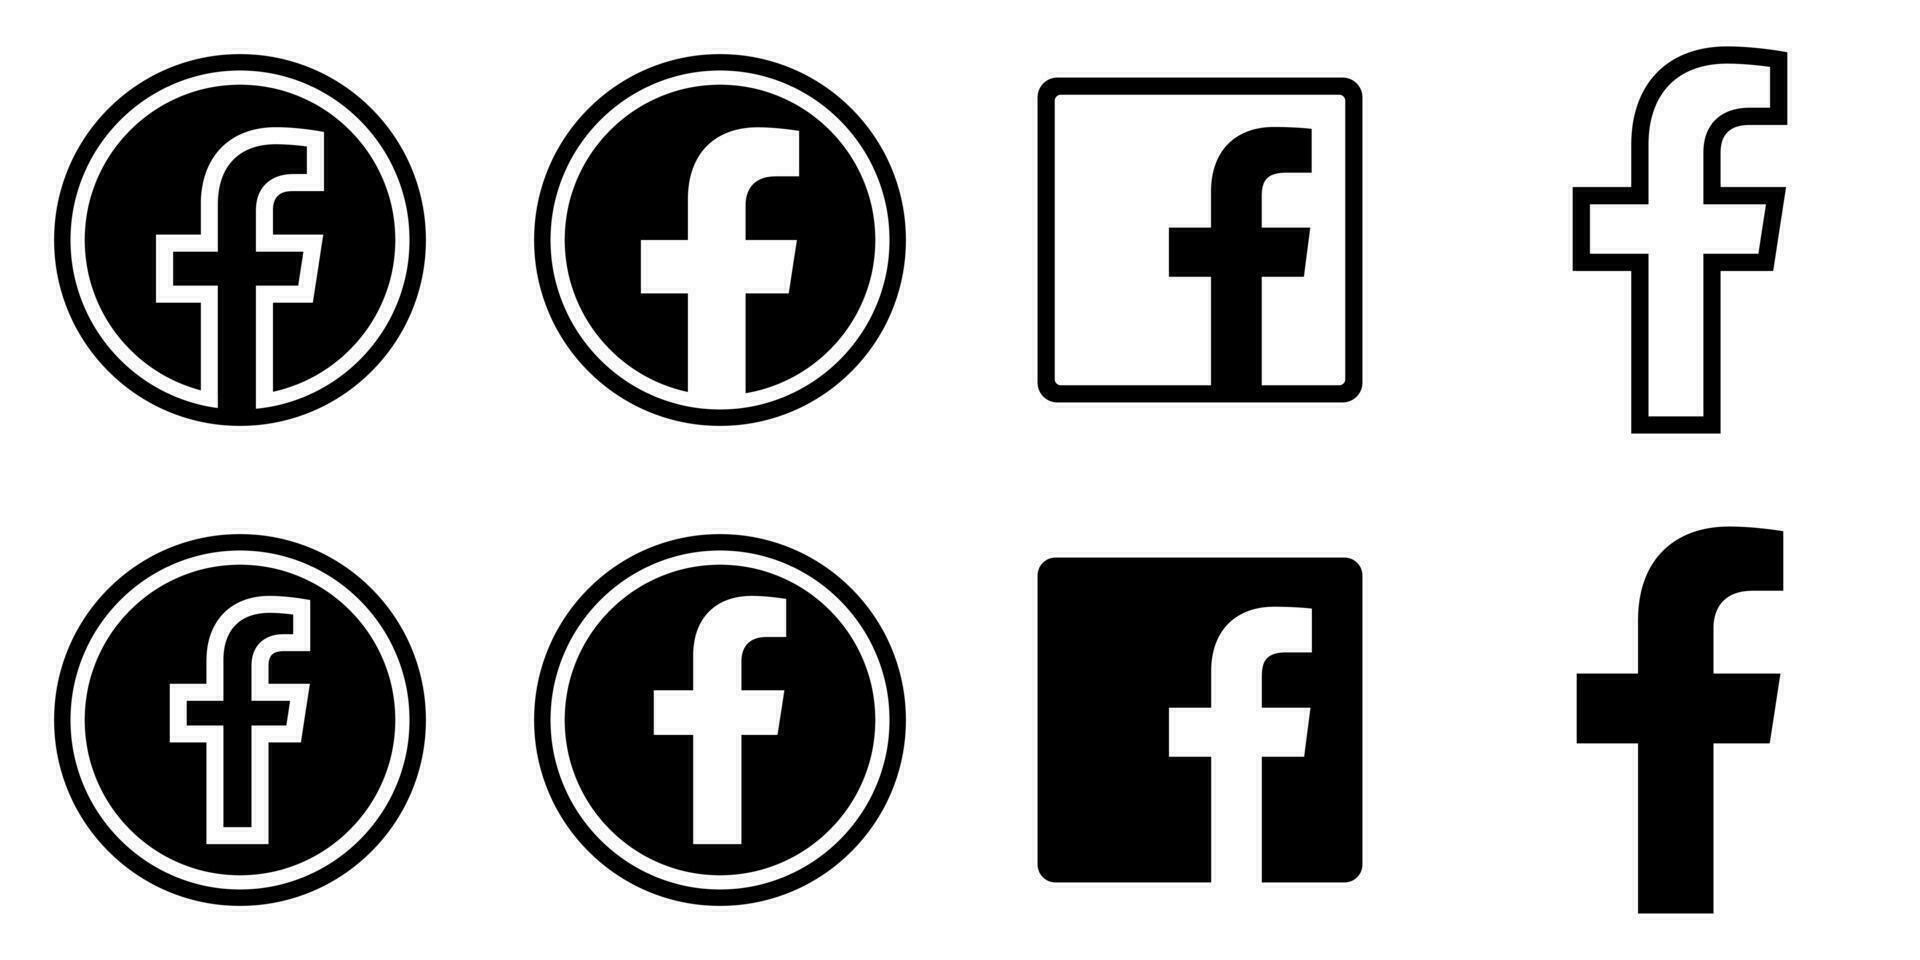 Facebook Logo - - Vektor einstellen Sammlung - - schwarz Silhouette gestalten - - isoliert. f Symbol zum Netz Buchseite, Handy, Mobiltelefon App oder drucken Materialien.